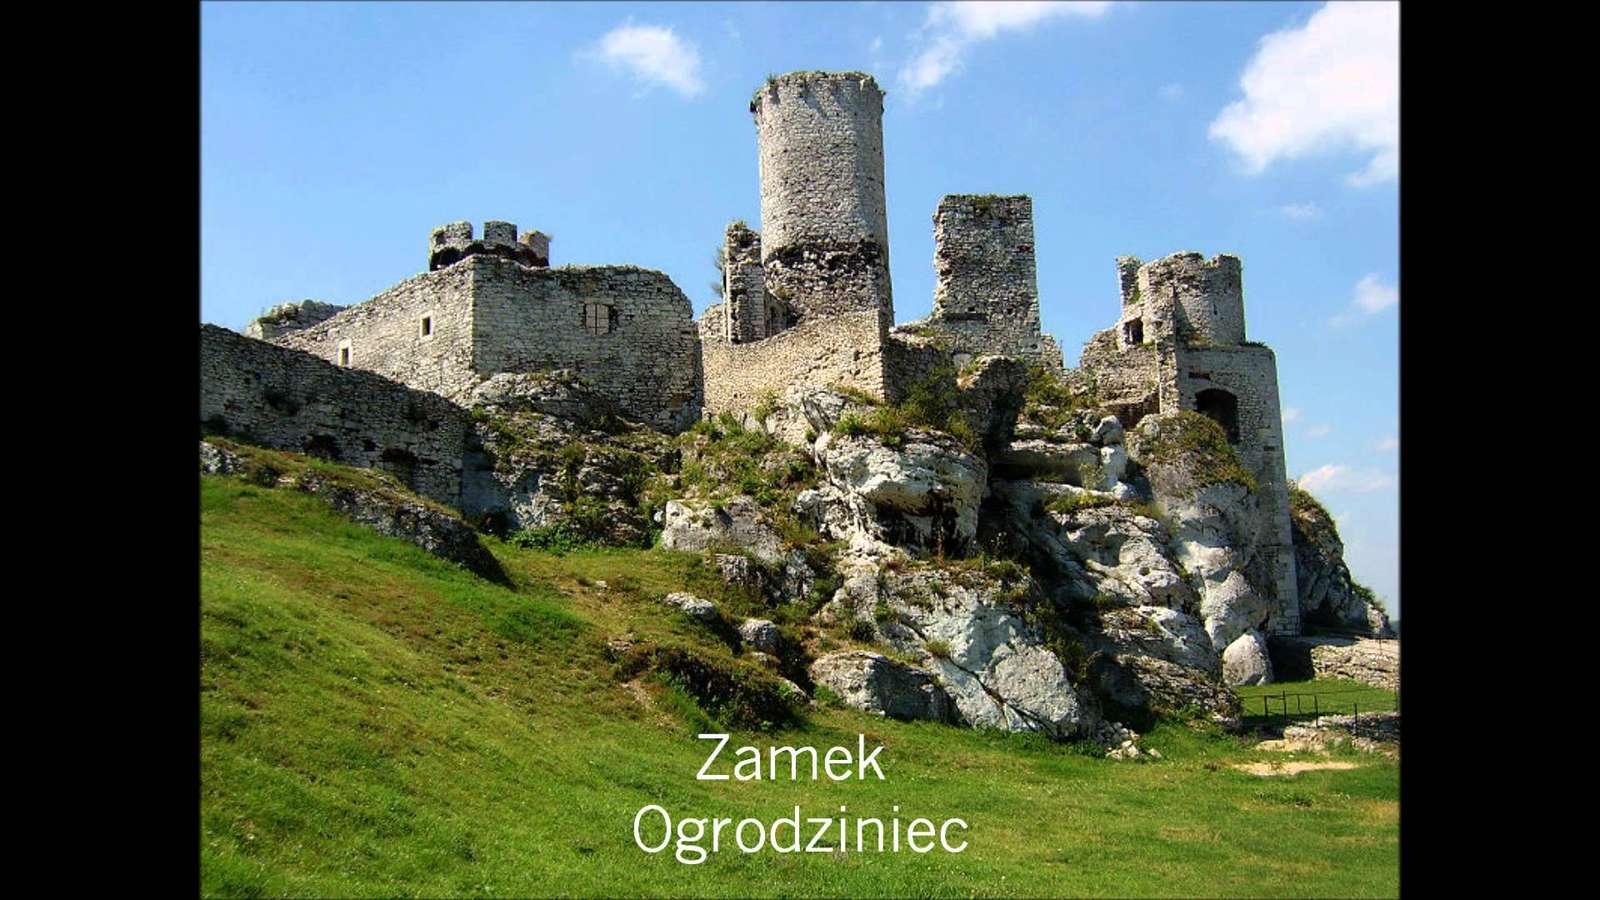 De mooiste kastelen van Polen online puzzel